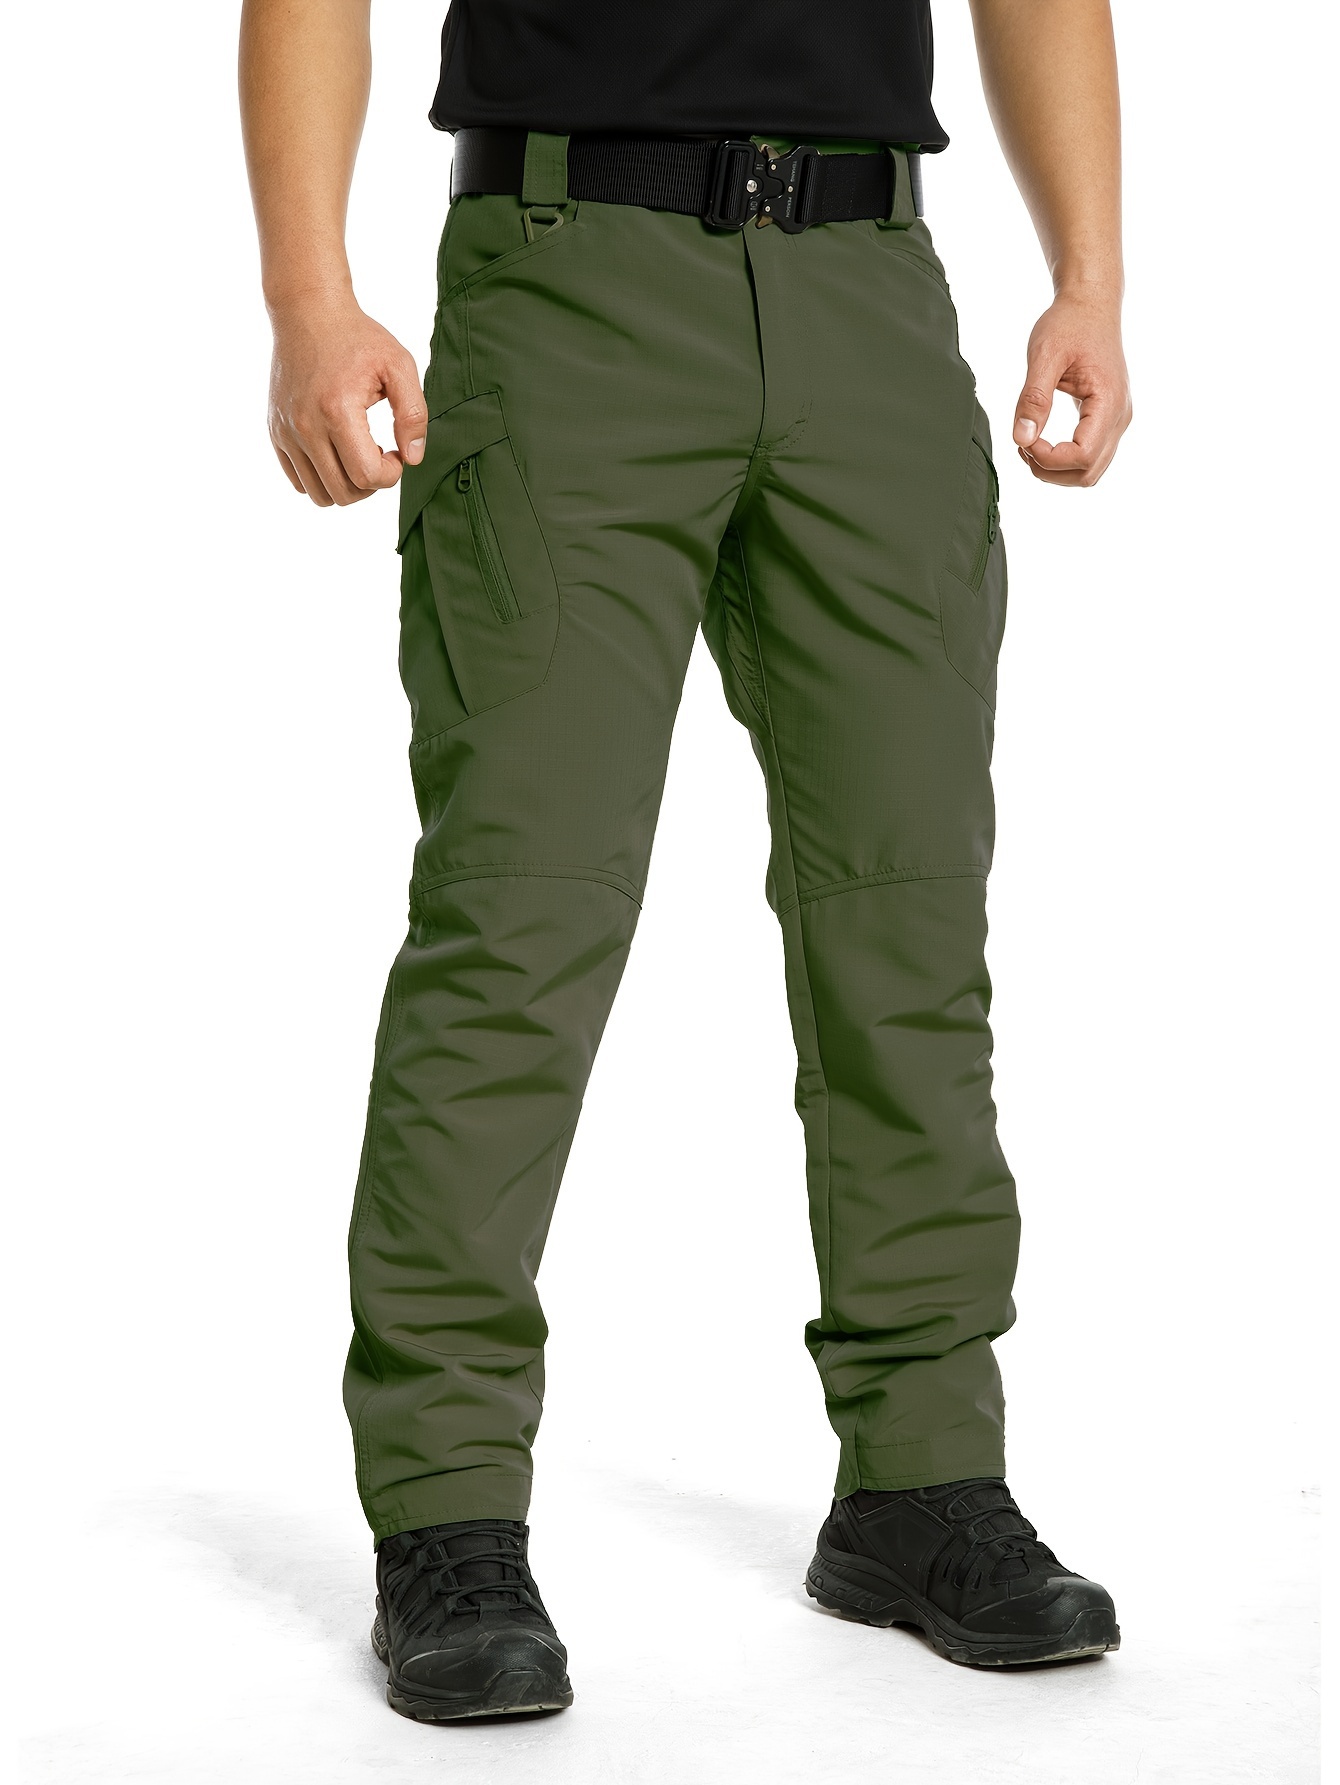 Pantalones Tácticos Militares Cargo Para hombres Cortos O Largos Ejército  Sólido